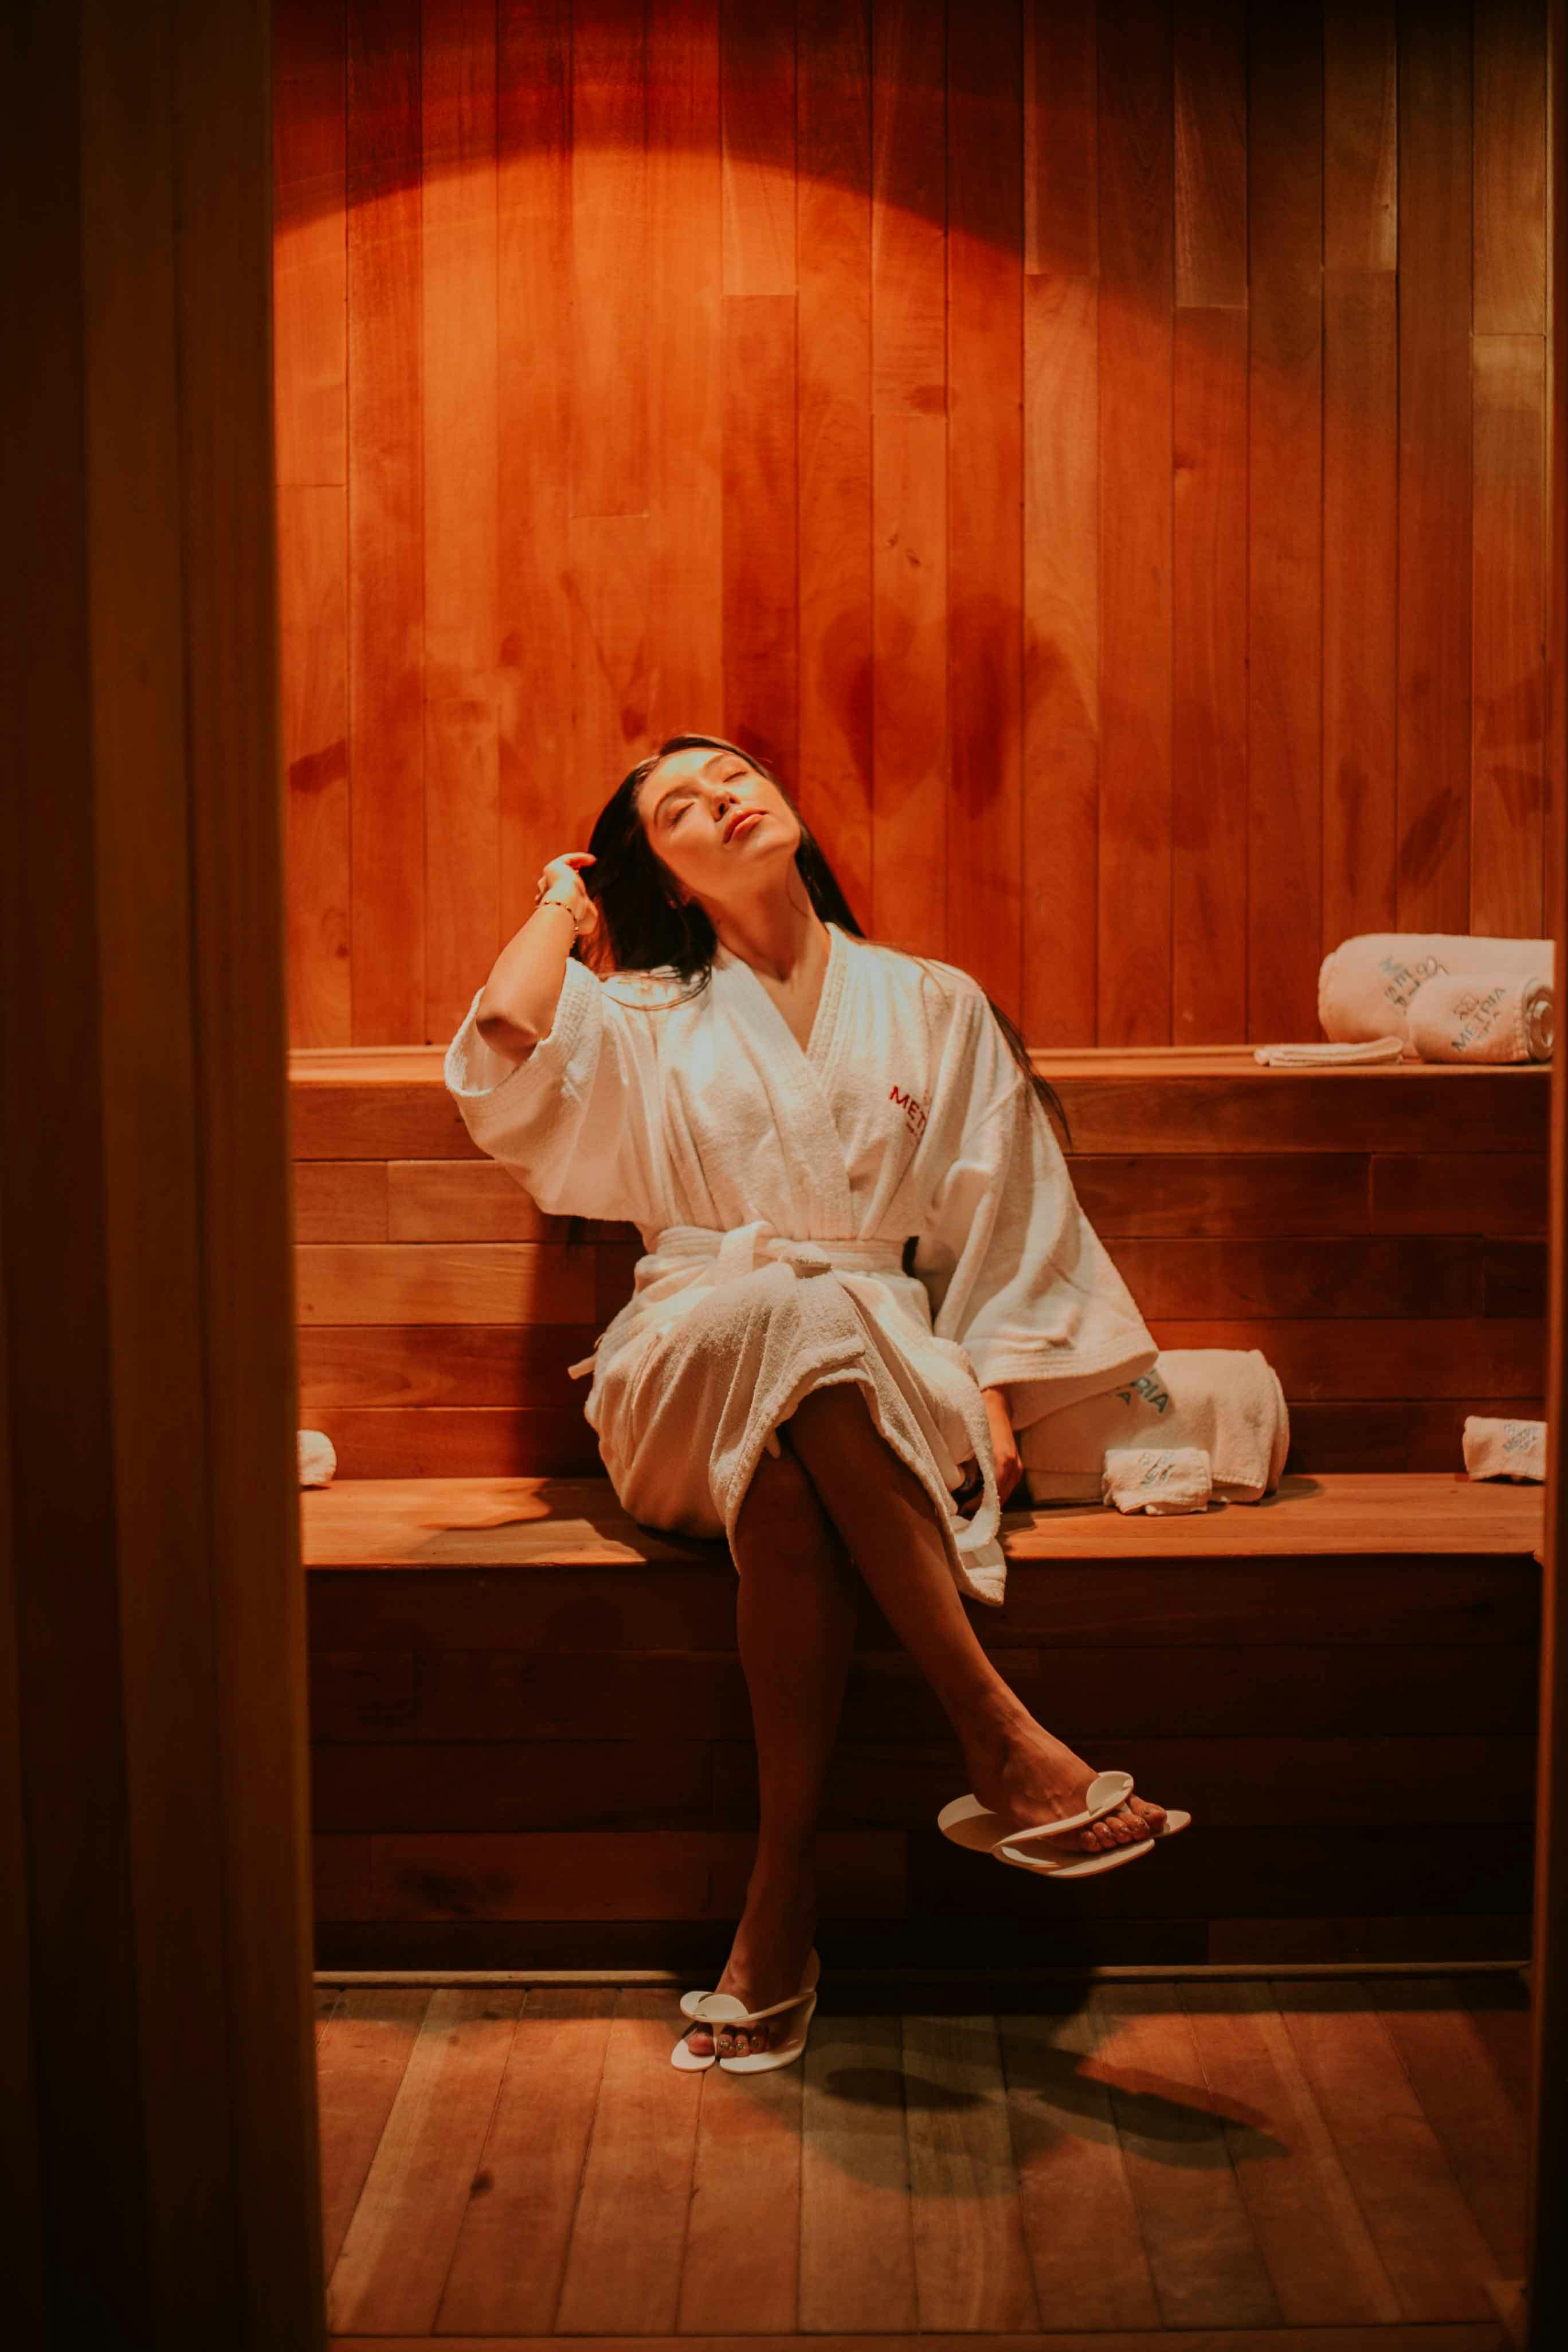 Mujer joven relajándose en la sauna de infrarrojos durante un procedimiento  en el centro del balneario. cuidado del cuerpo